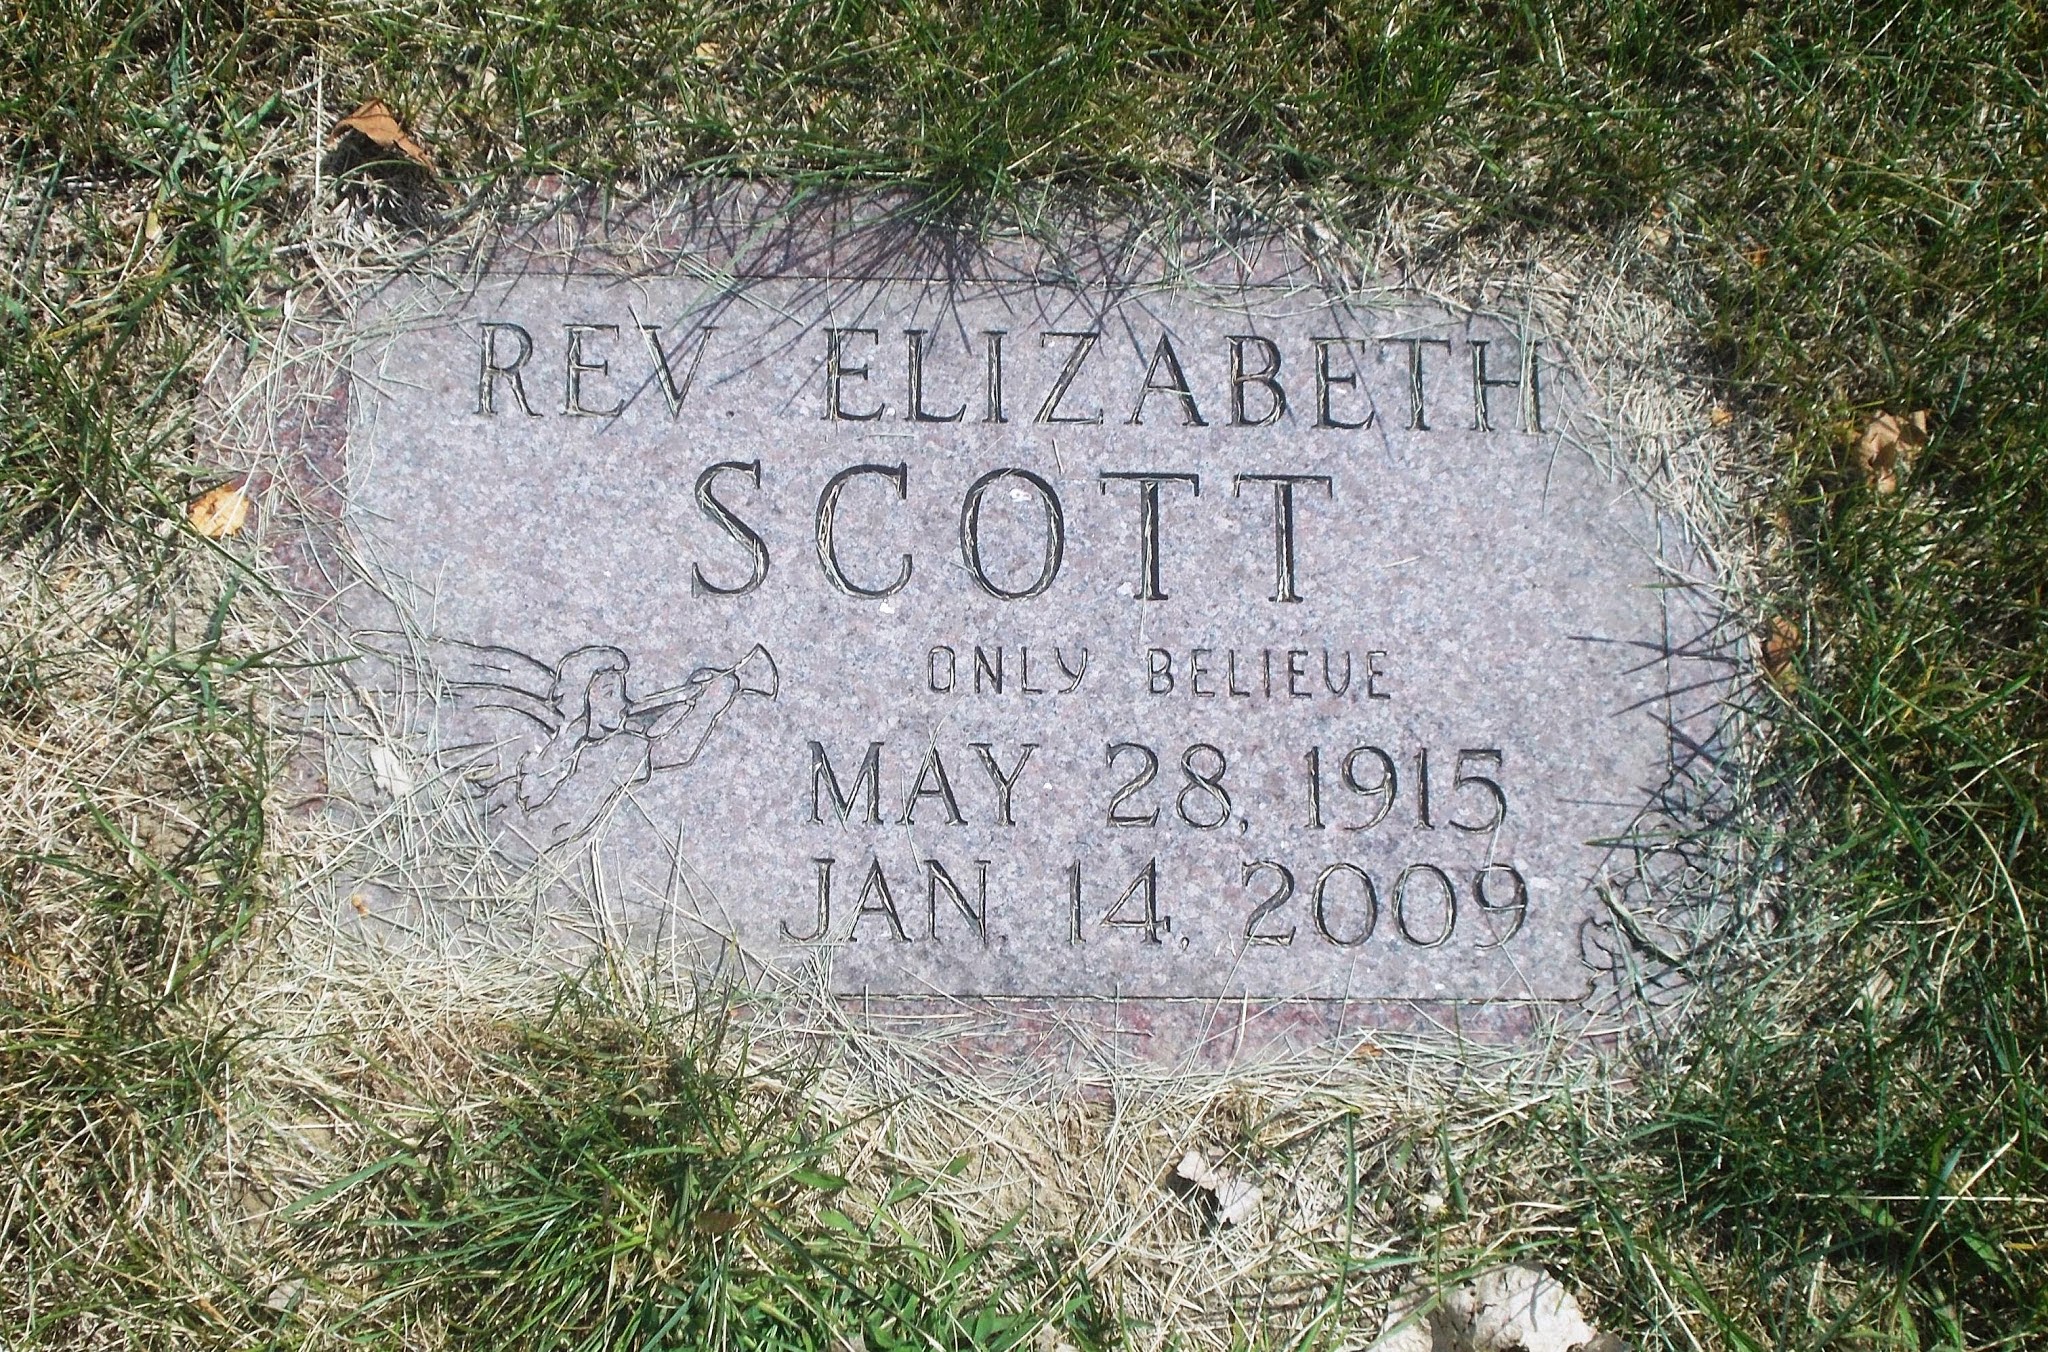 Rev Elizabeth Scott